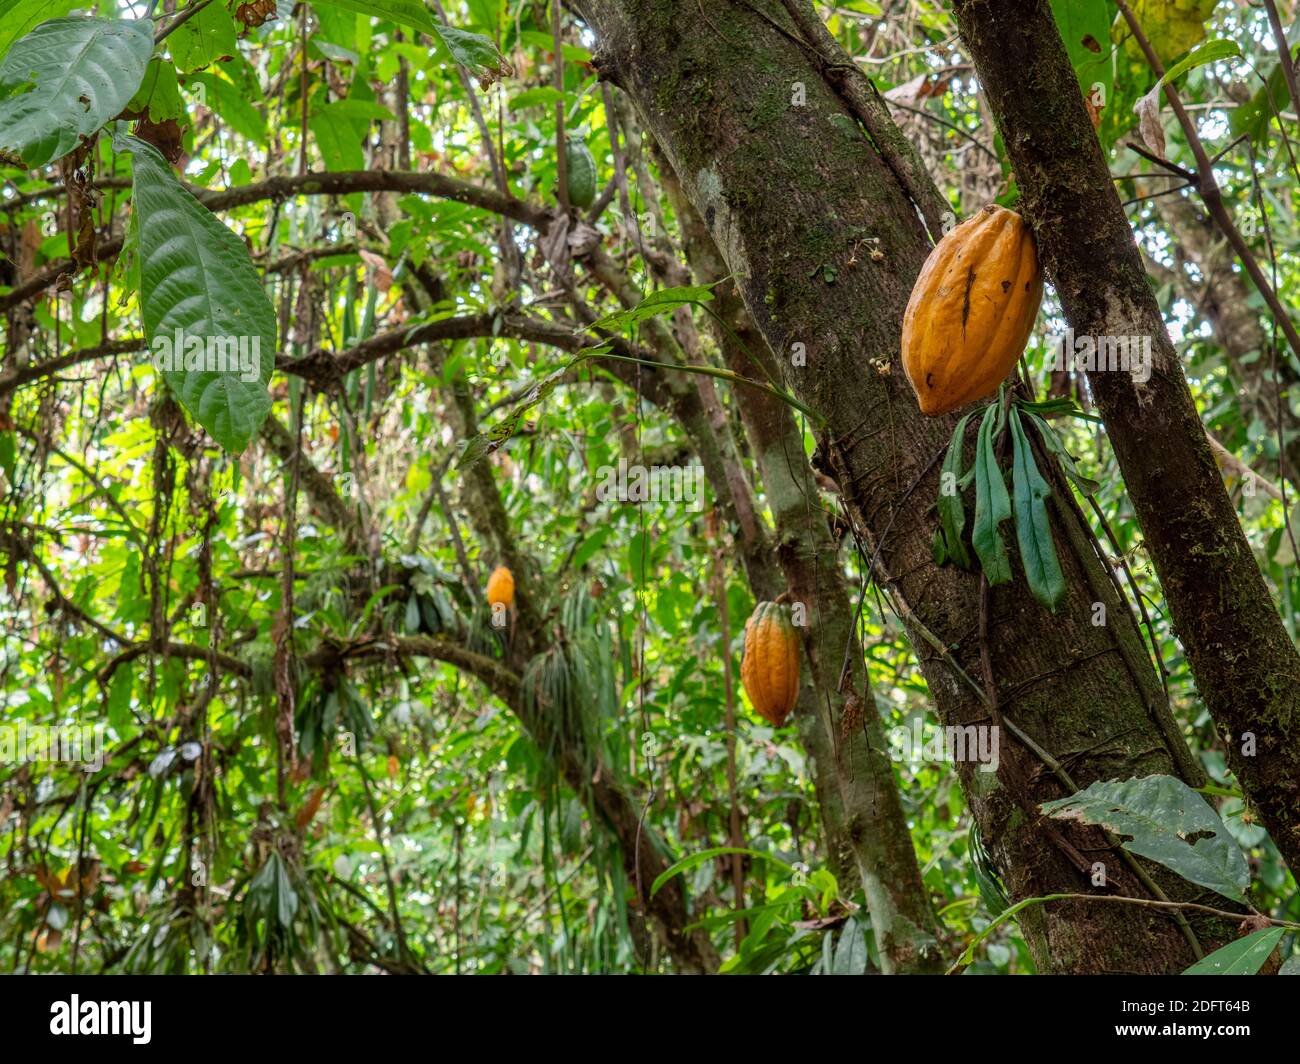 Árbol de cacao (Theobroma cacao) con vainas maduras. Esta es Arriba Cacao o Cacao Blanco, el cacao de mayor calidad en Ecuador. Cerca de Puerto Quito en el oeste E. Foto de stock